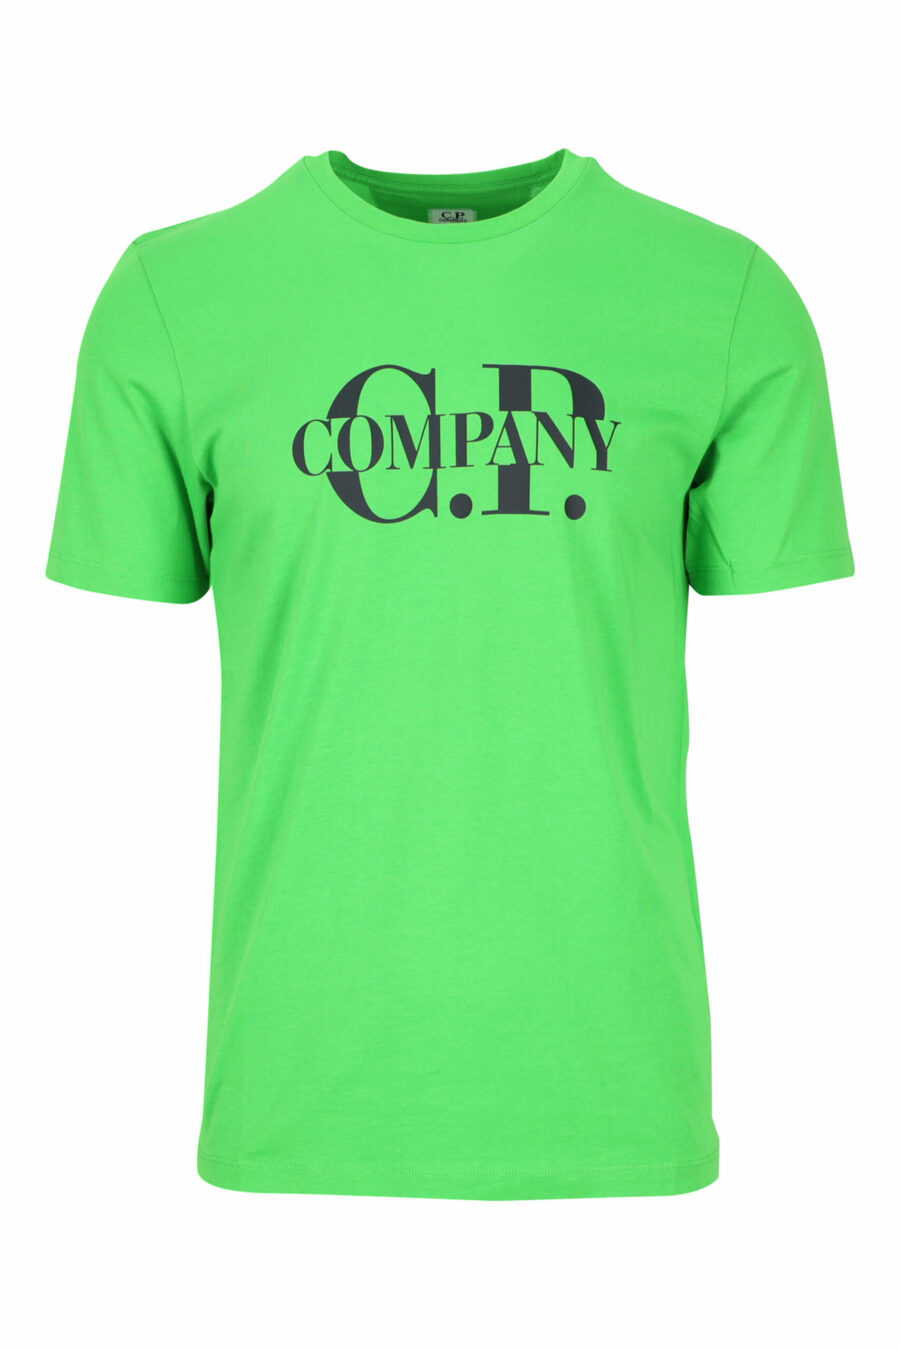 Grünes T-Shirt mit grafischem Maxilogo - 7620943560626 skaliert